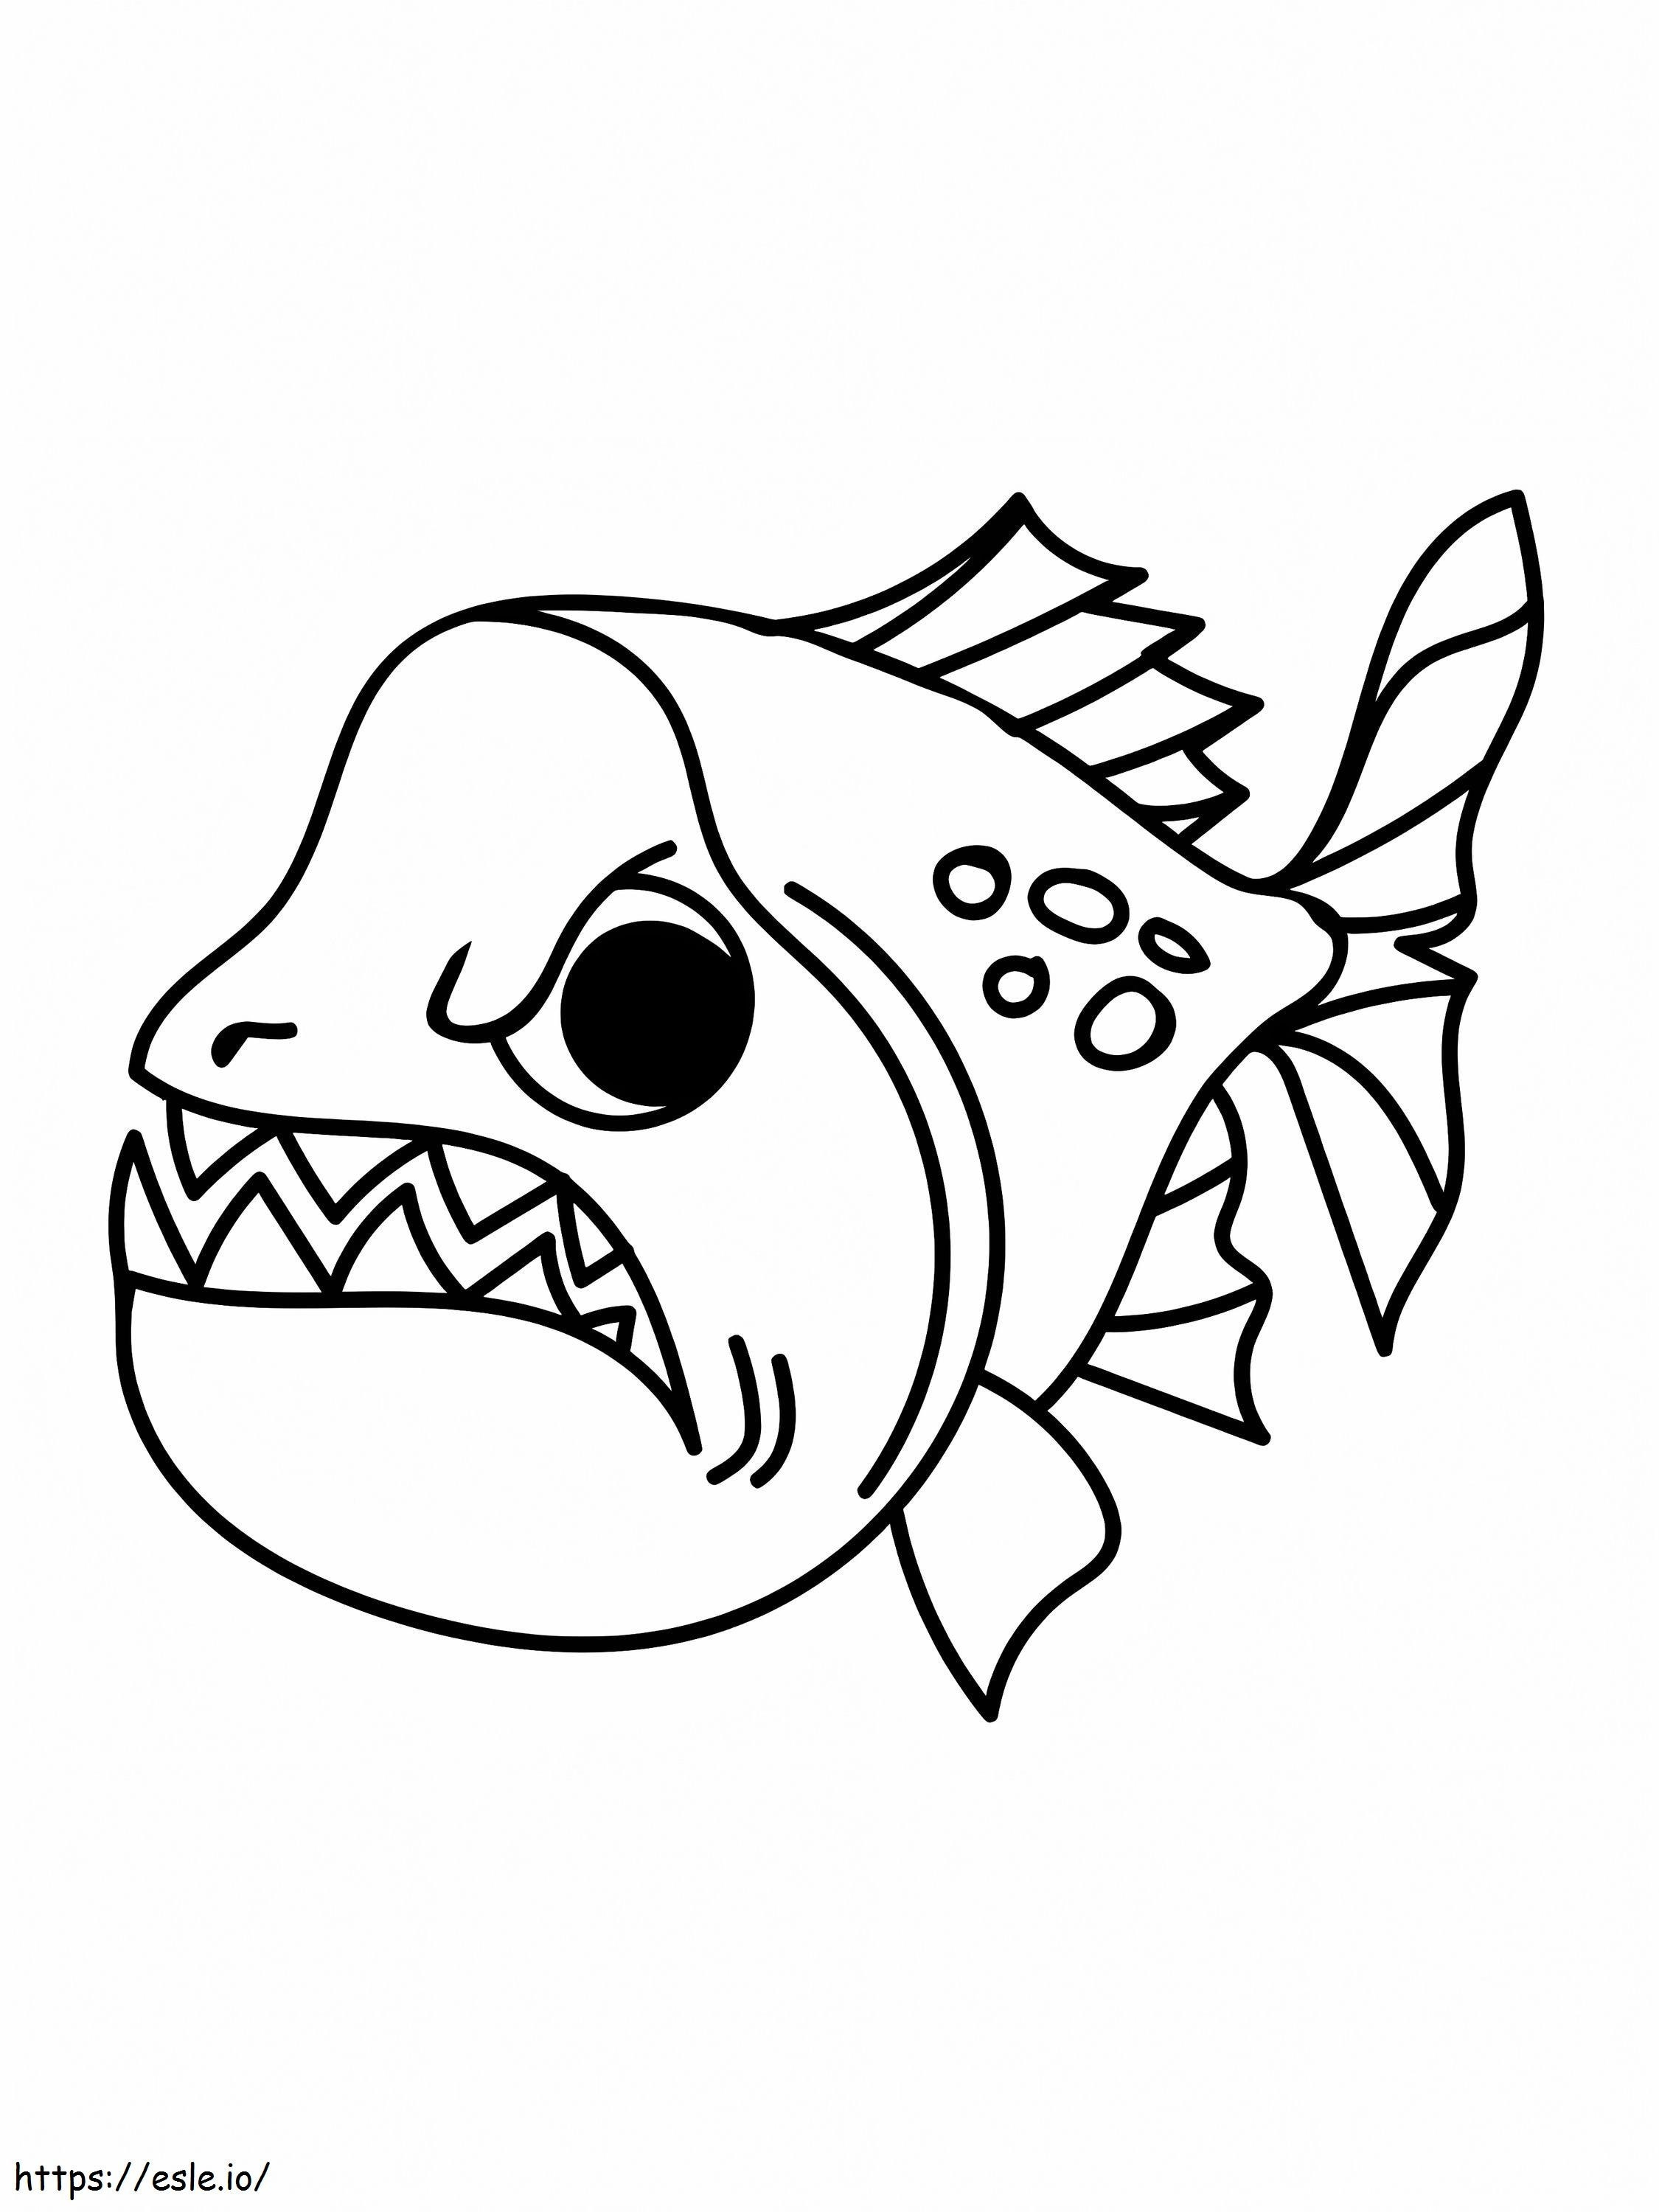 Wütender Piranha-Fisch ausmalbilder